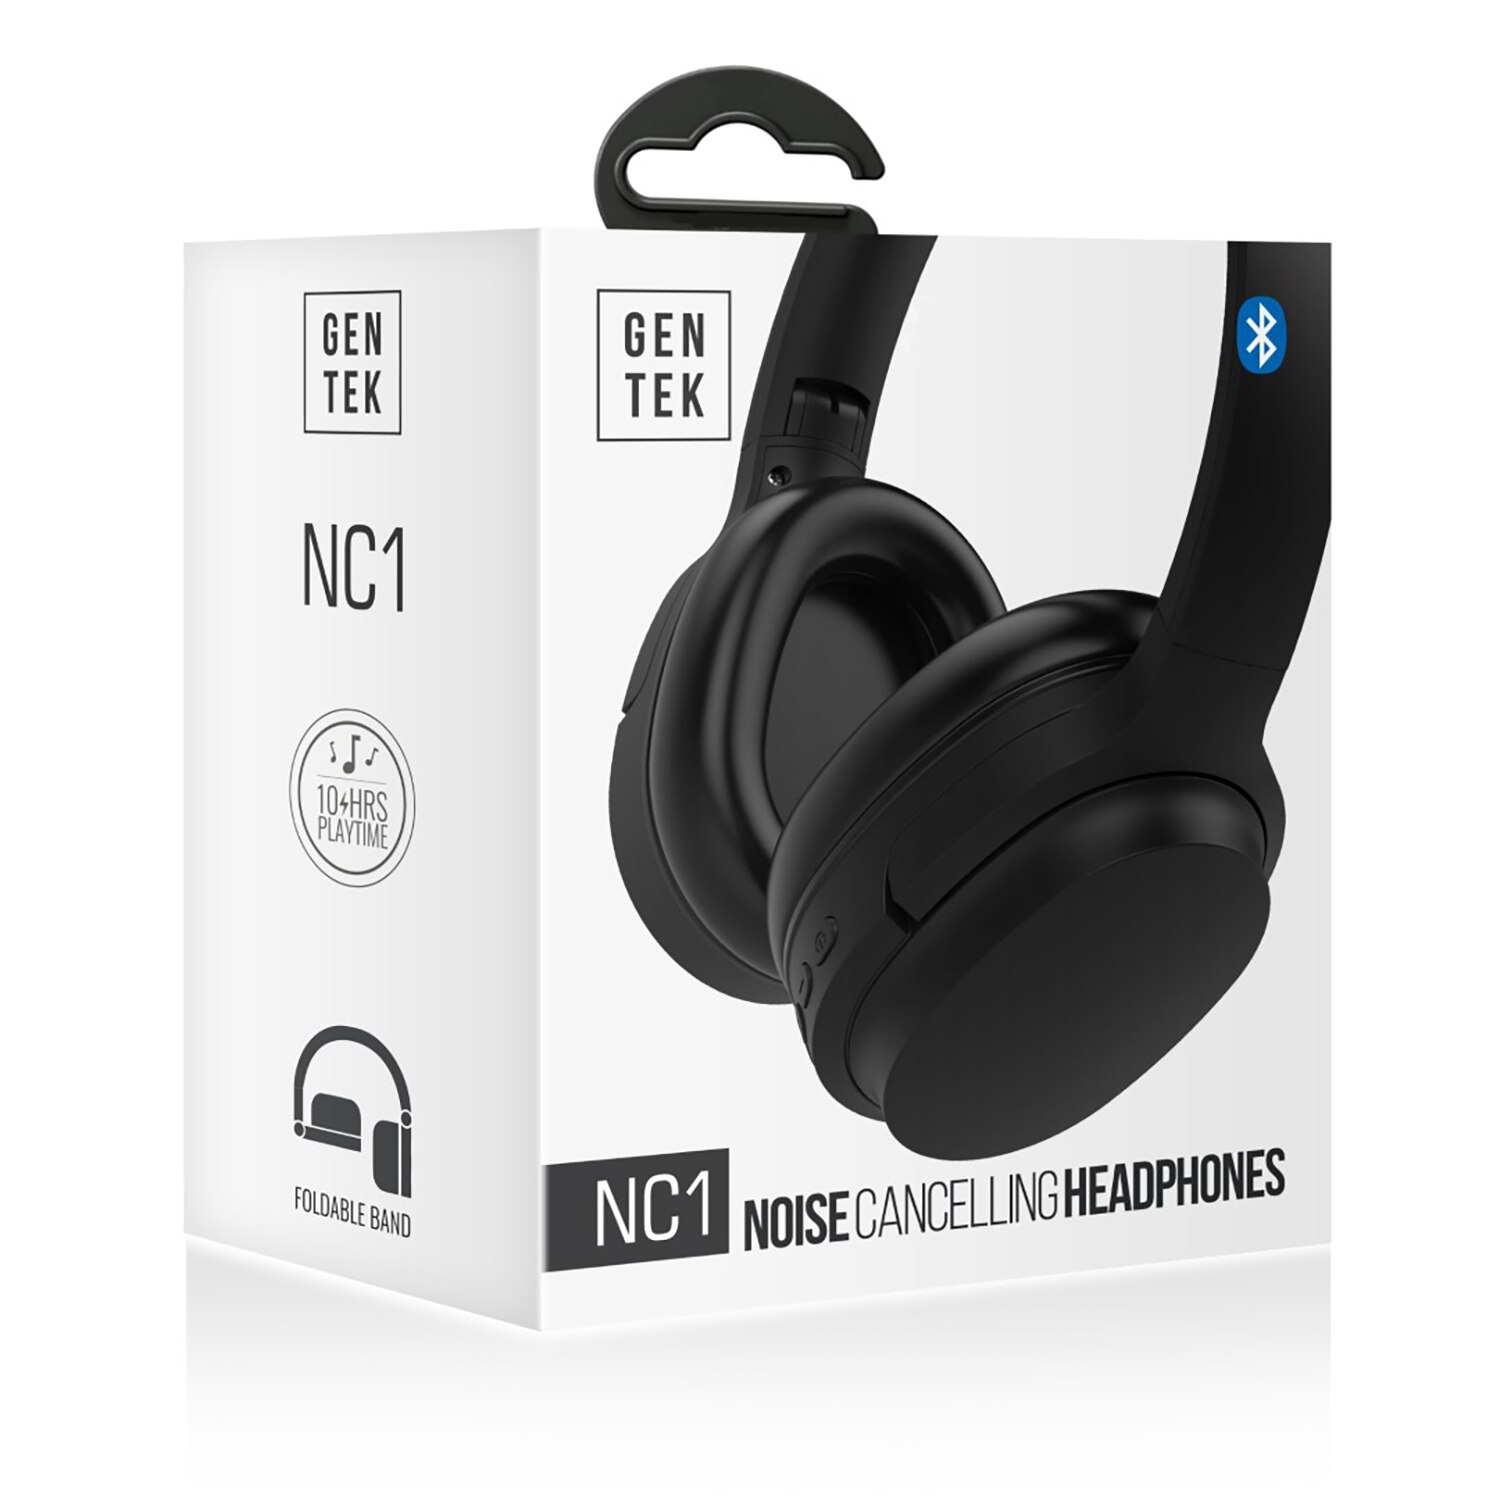 verontschuldigen eigendom Pellen GENTEK Noise Cancelling Headphones, Black | Pick Up In Store TODAY at CVS